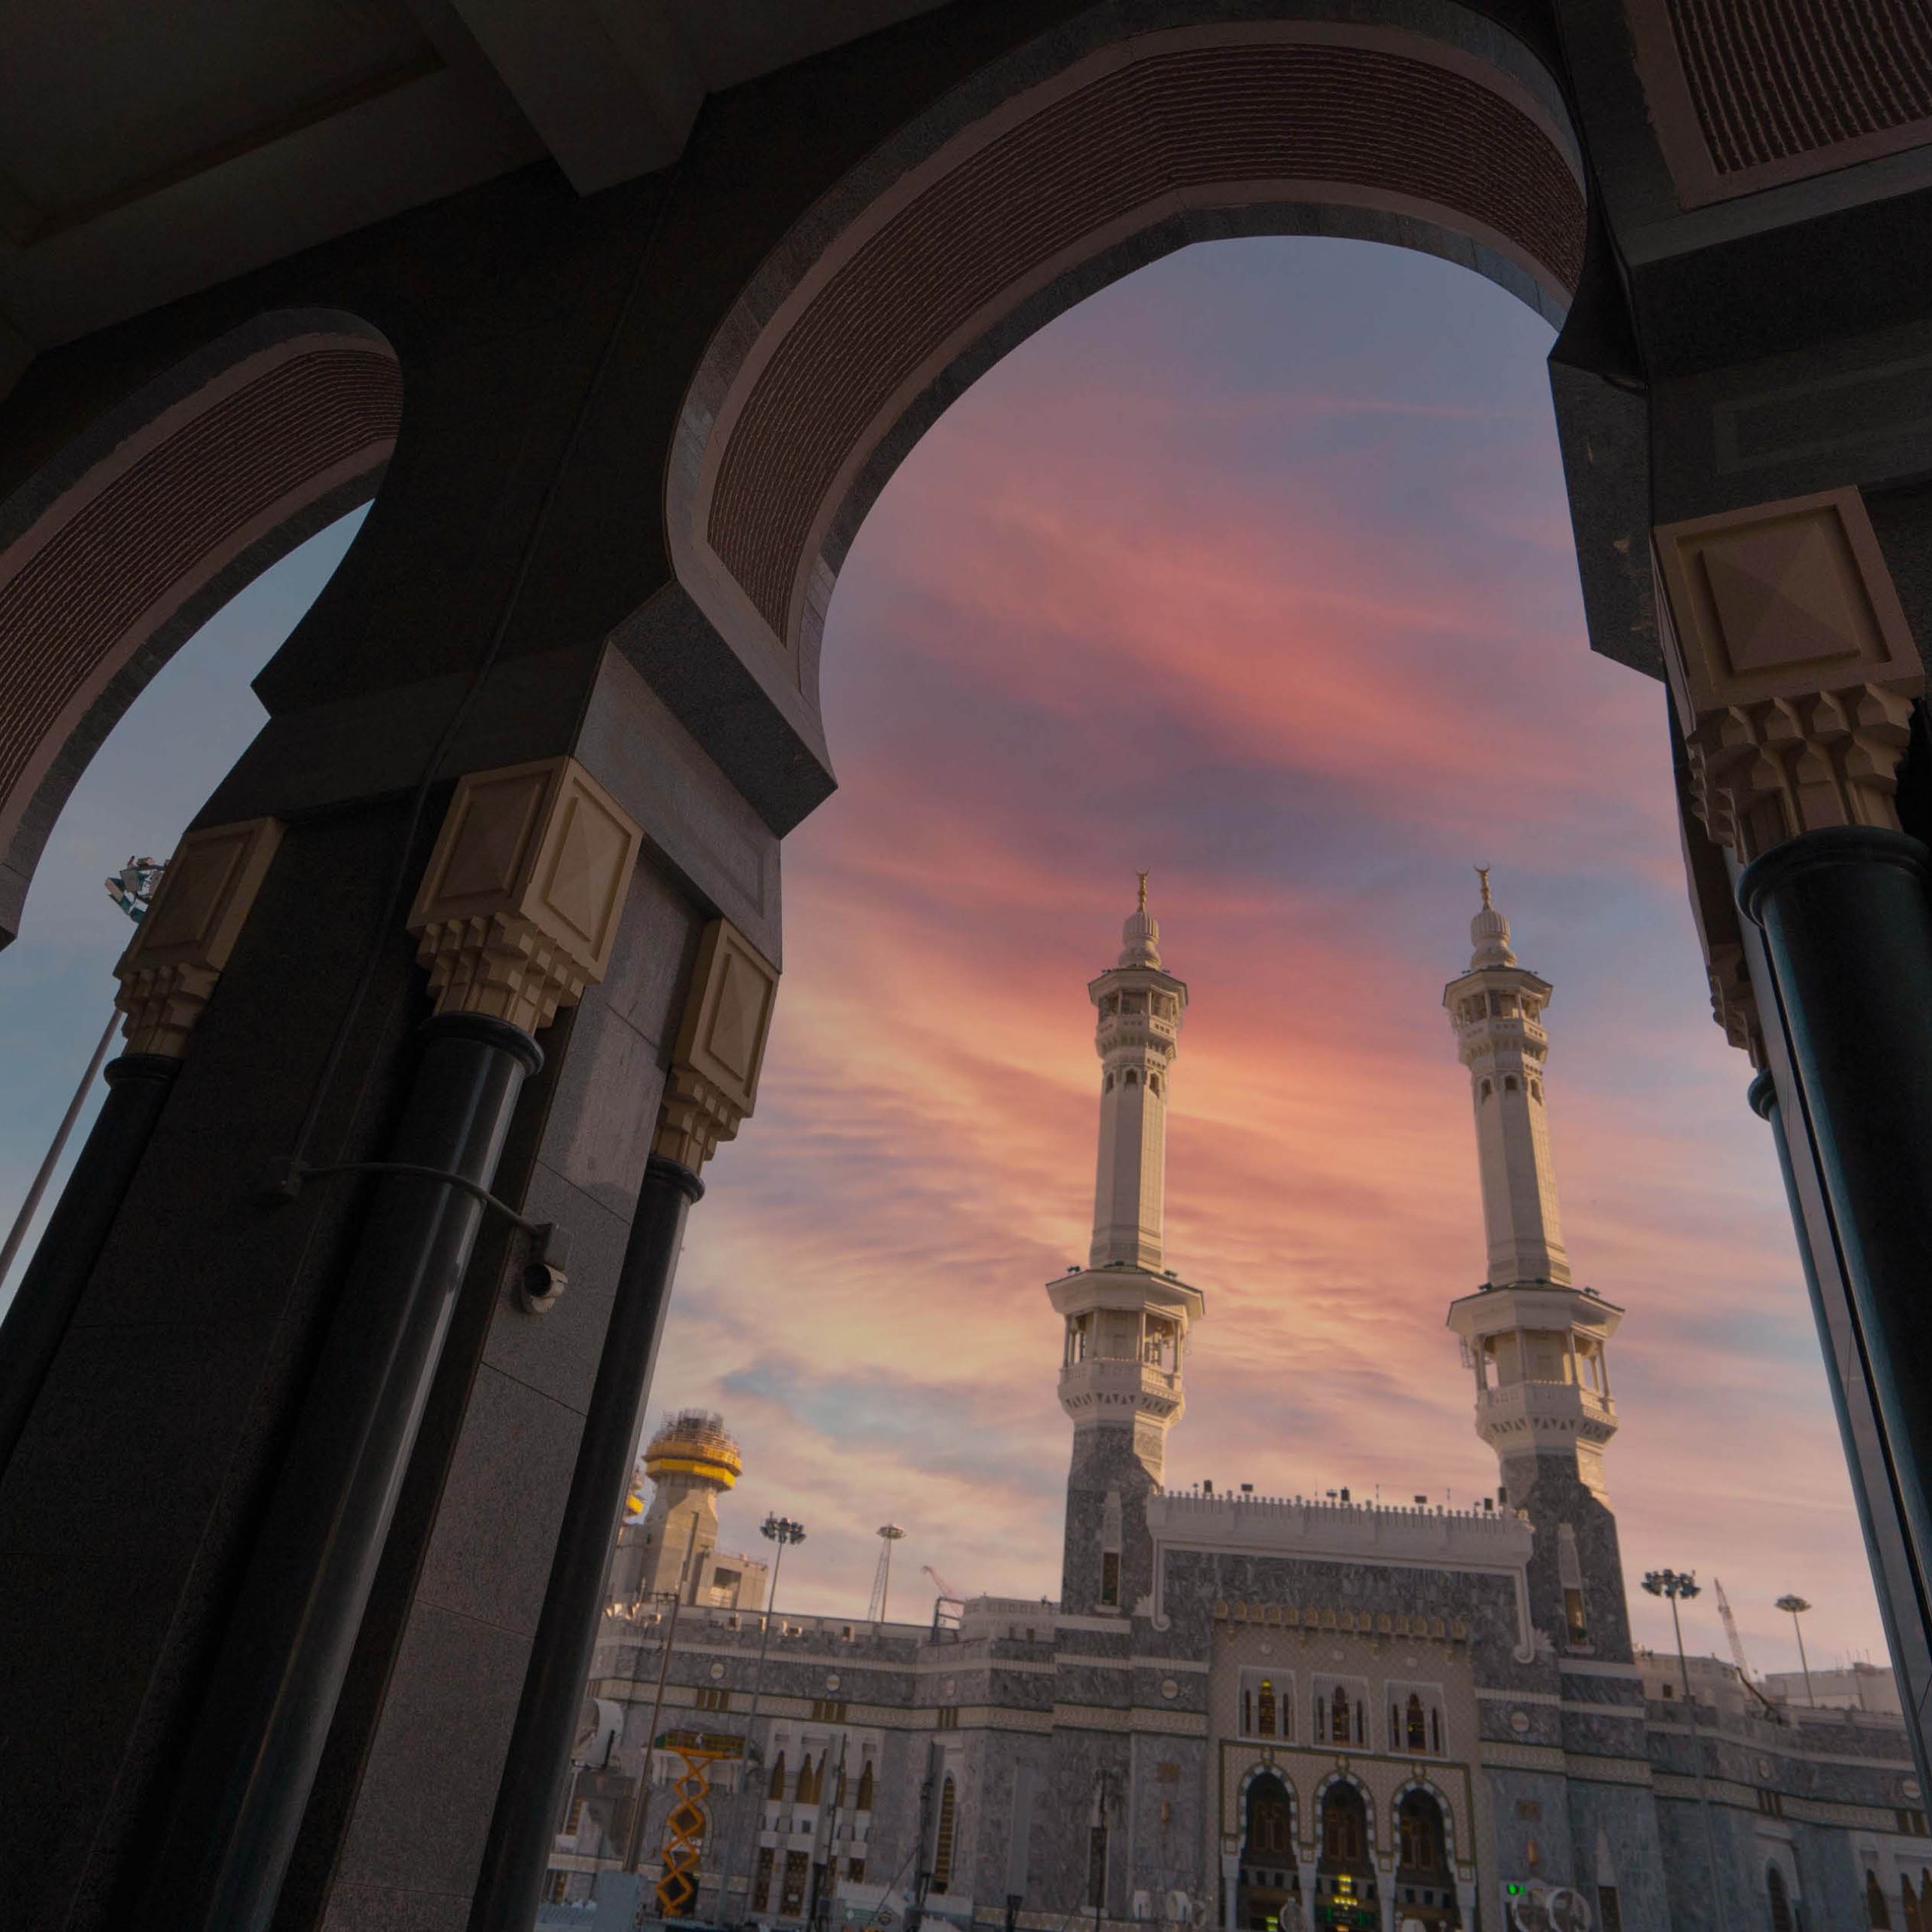 إستكشاف المدن المجاورة لمدينة مكة المكرمة في رحلة لمدة يوم واحد